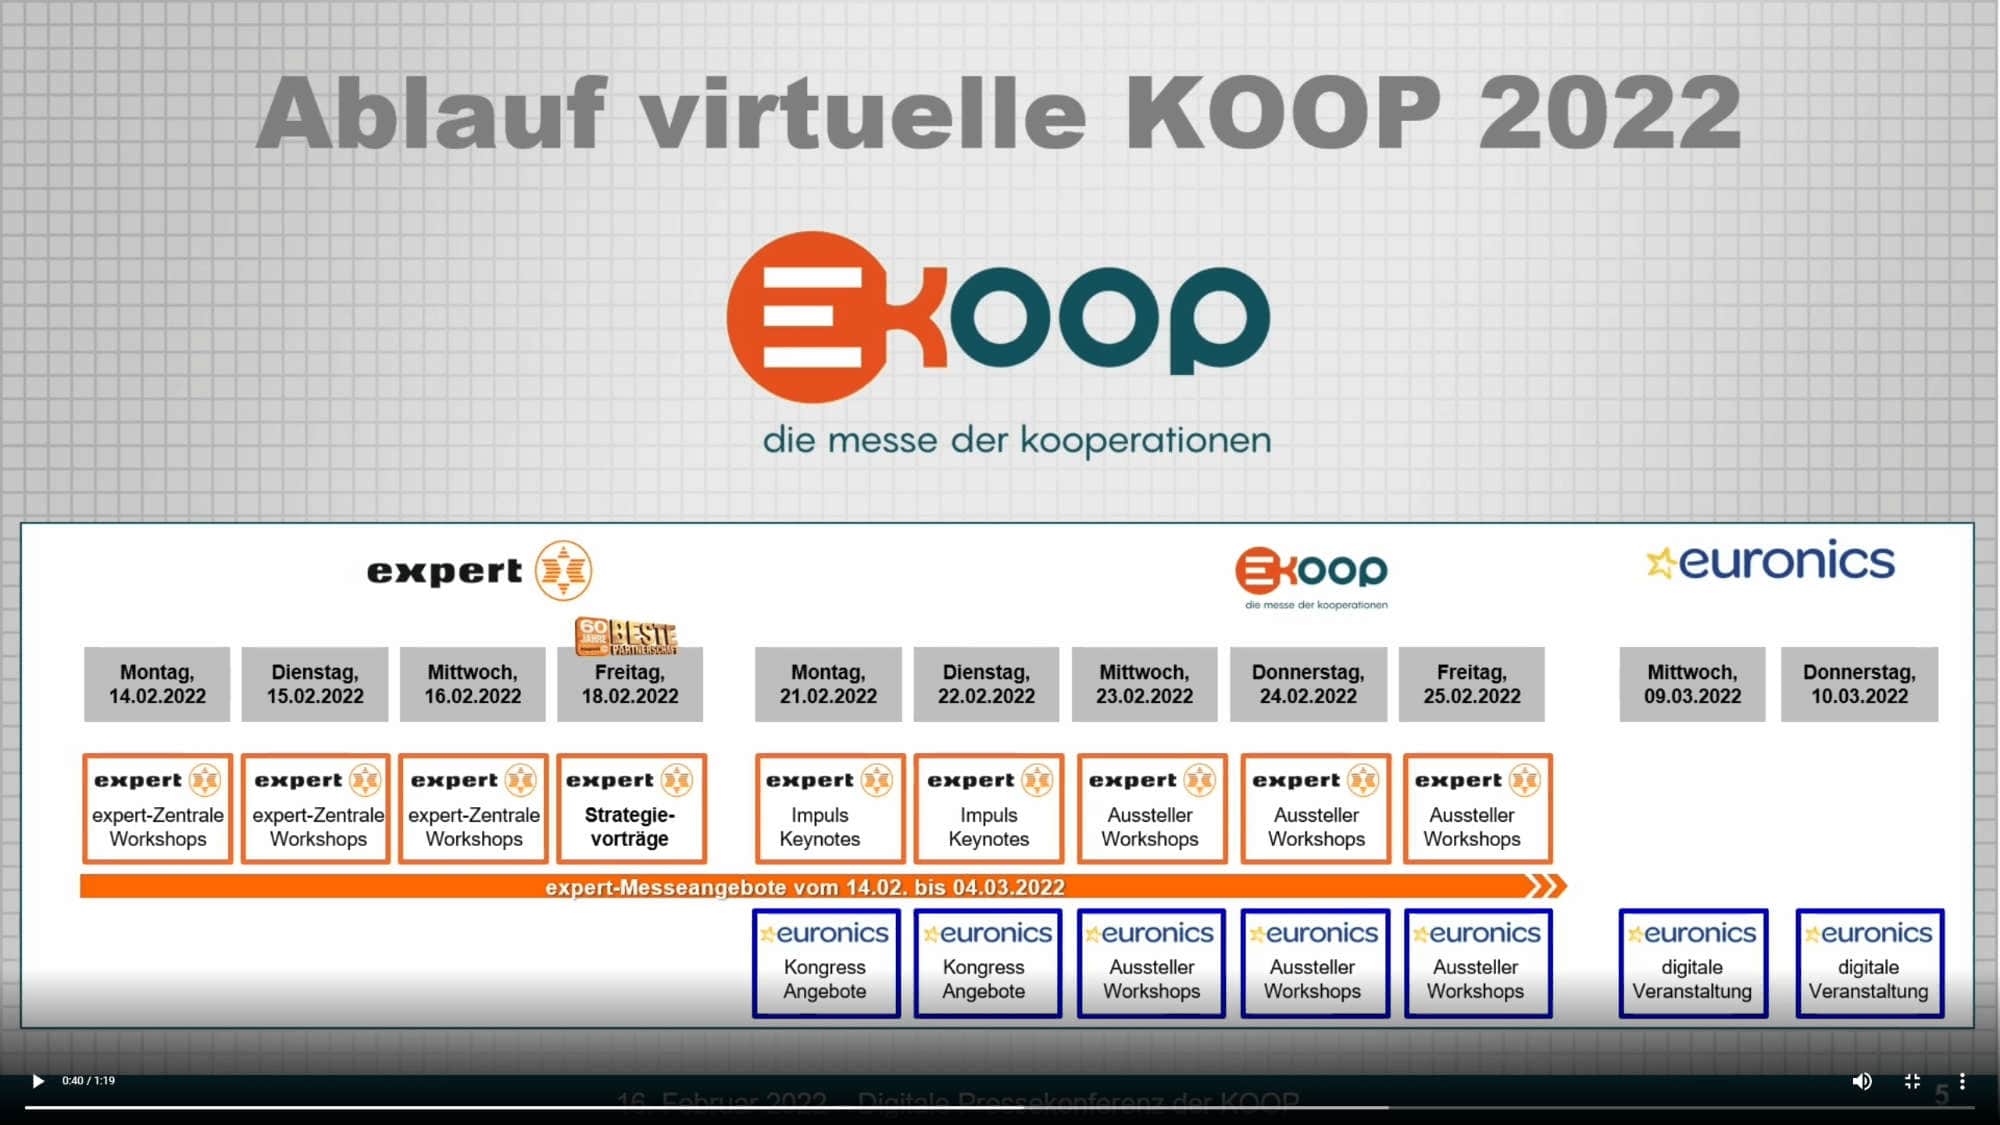 Fahrplan der virtuellen KOOP 2022.